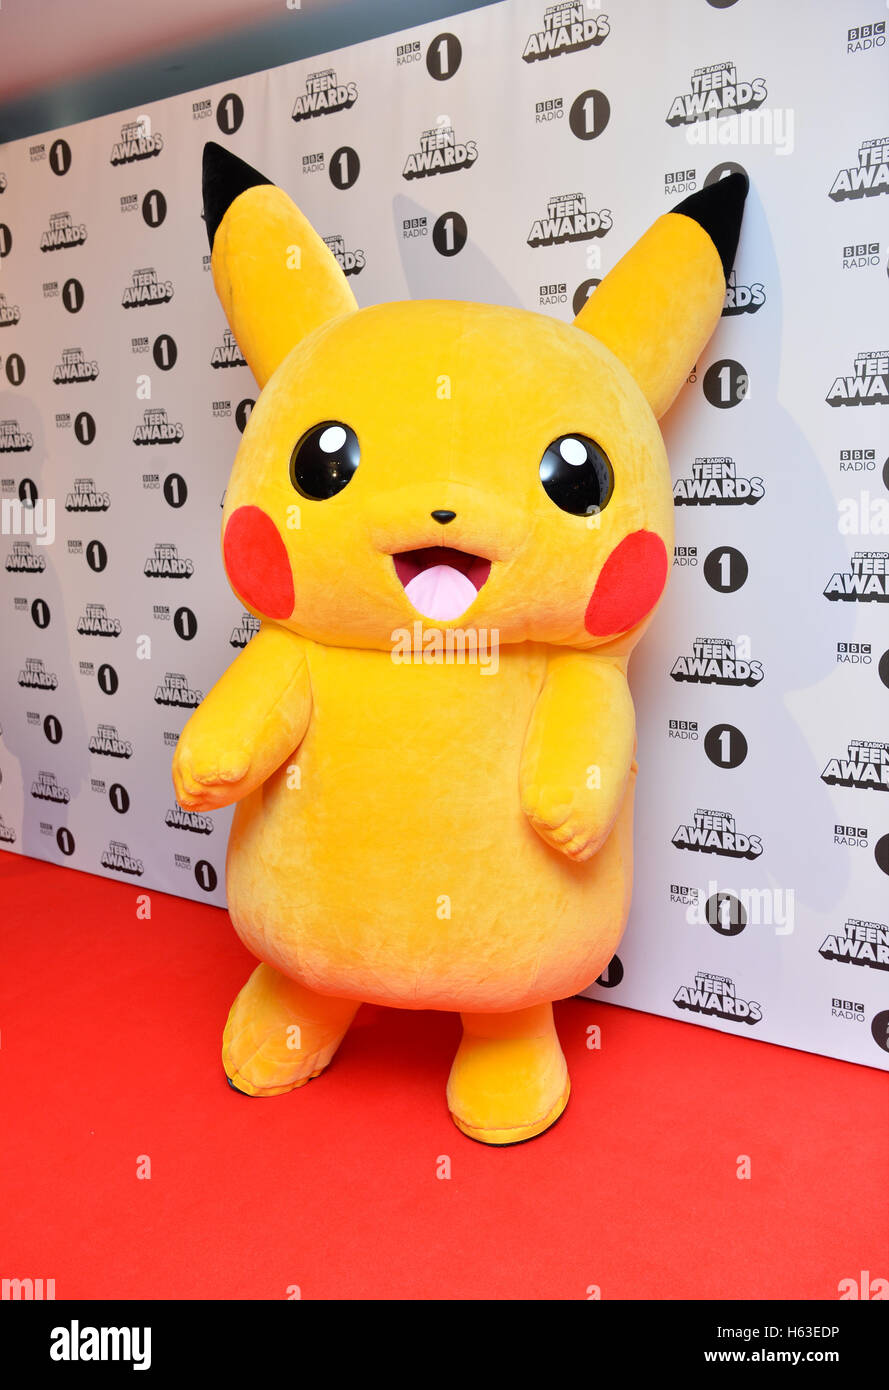 Pikachu participant à la BBC Radio 1 Teen Awards, qui a eu lieu à l'ETI Wembley Arena de Londres. Voir l'activité Histoire de l'adolescence de showbiz. Banque D'Images